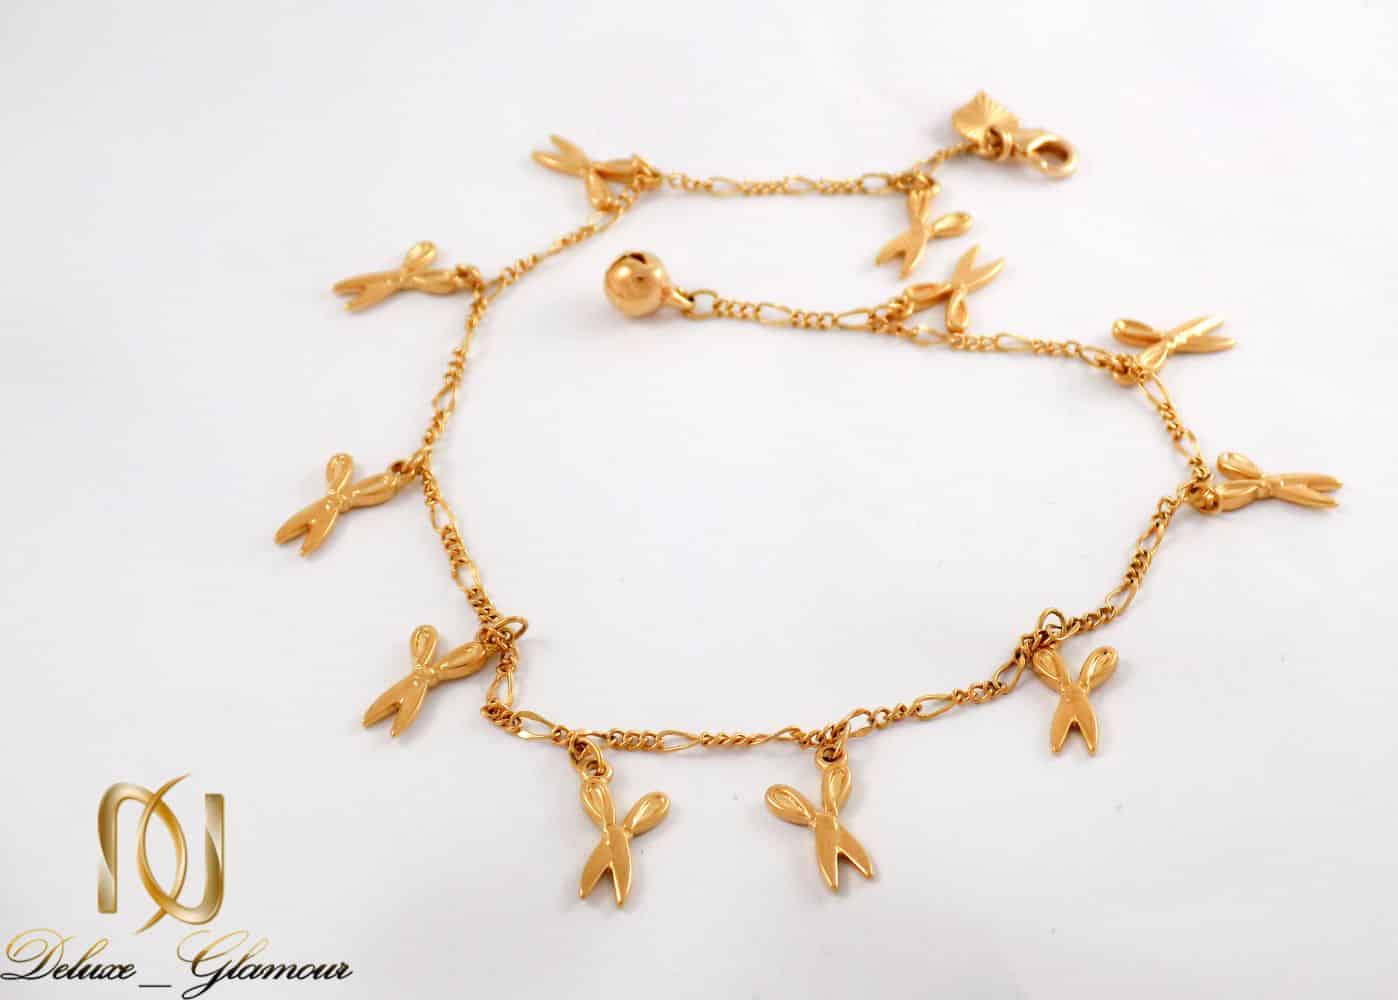 پابند زنانه ژوپینگ با طرح قیچی و روکش آب طلای 18 عیار se-n112 از نمای نزدیک